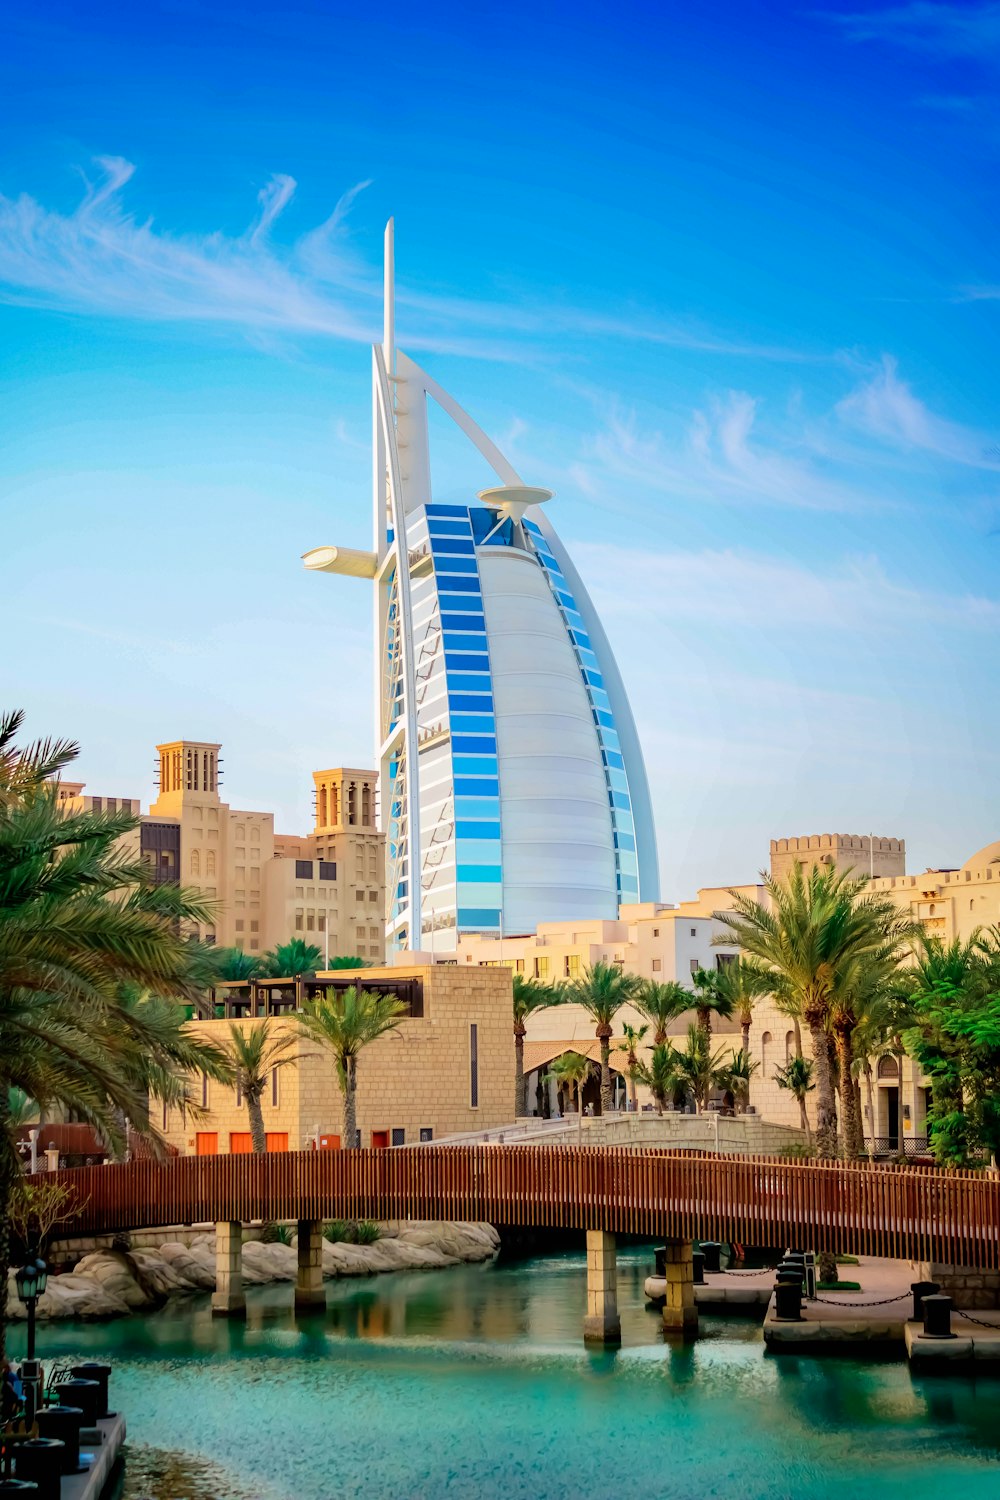 550+ Burj Al Arab Pictures | Download Free Images on Unsplash